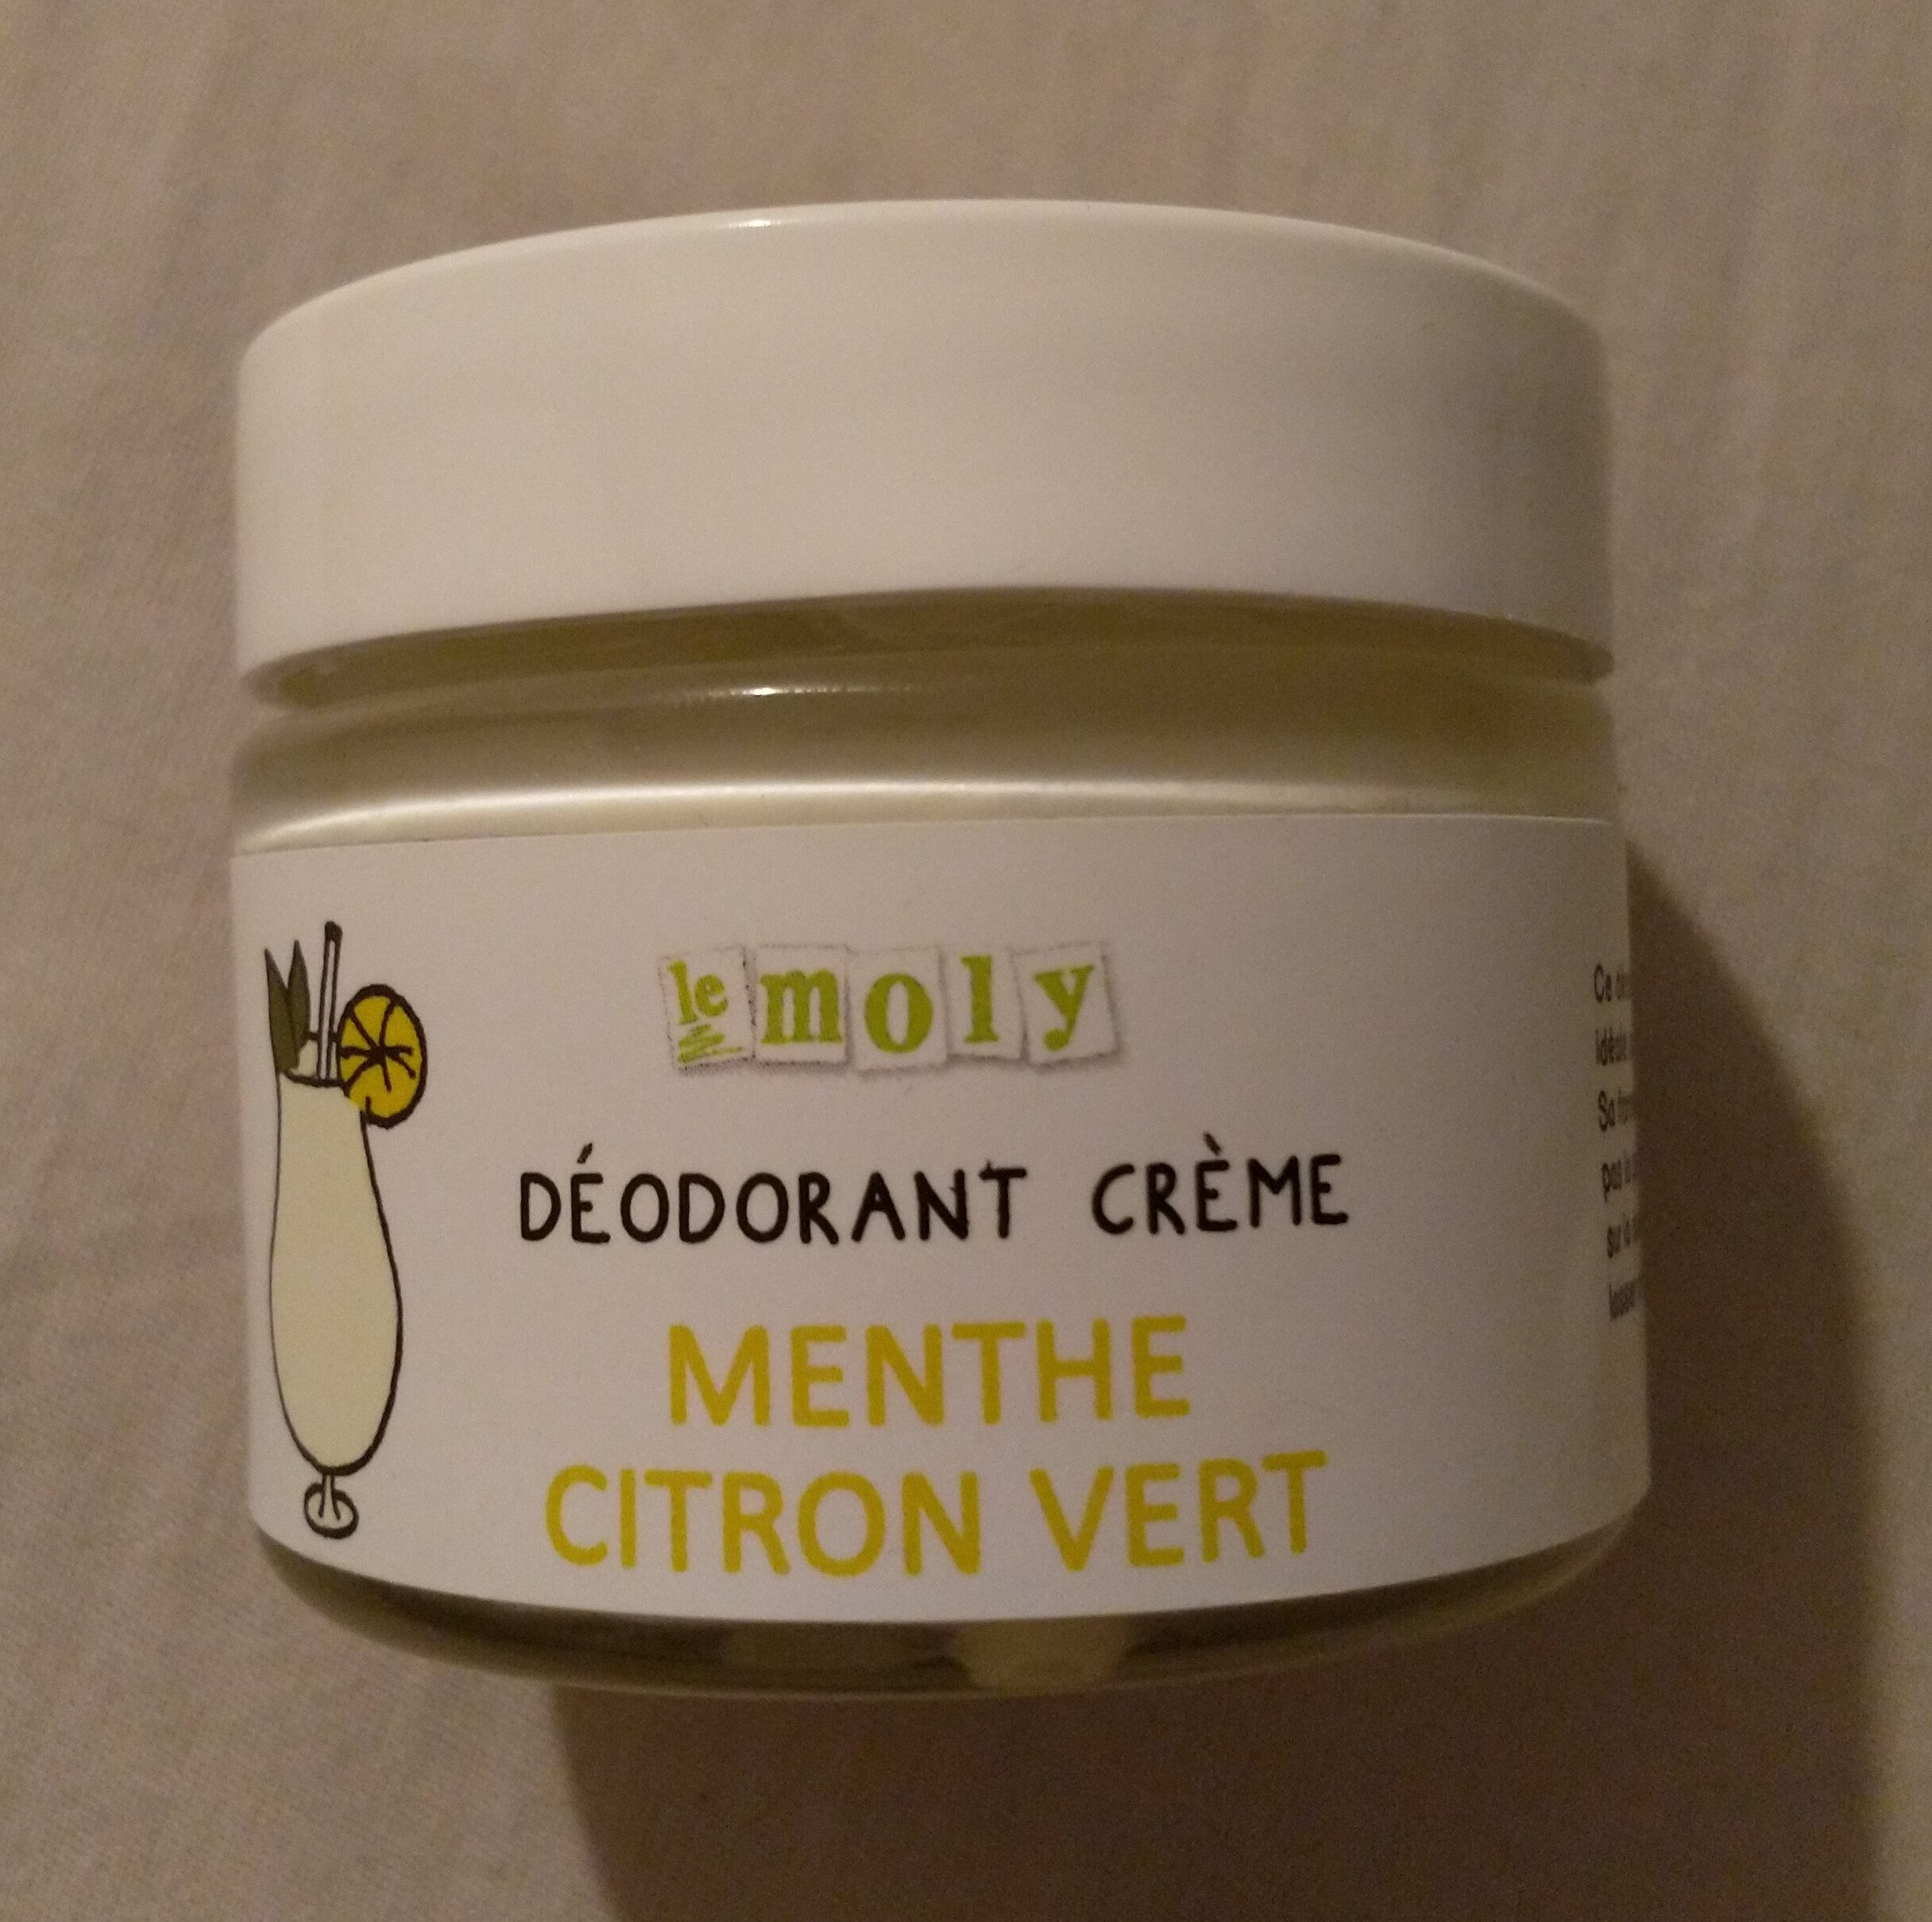 Déodorant crème menthe citron vert - Produkt - fr